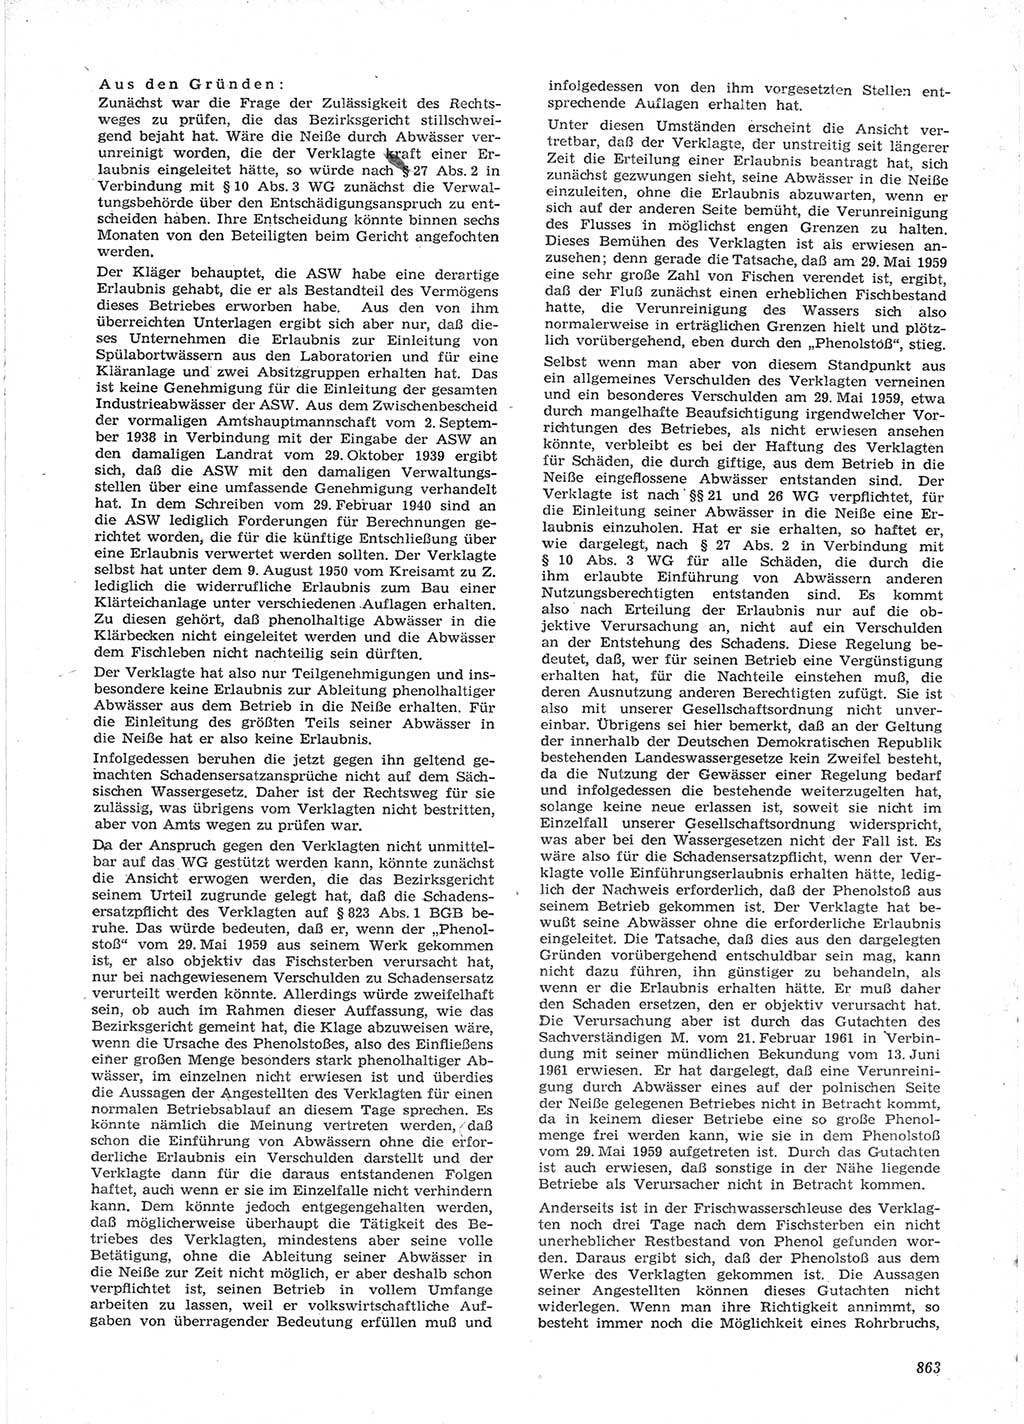 Neue Justiz (NJ), Zeitschrift für Recht und Rechtswissenschaft [Deutsche Demokratische Republik (DDR)], 15. Jahrgang 1961, Seite 863 (NJ DDR 1961, S. 863)